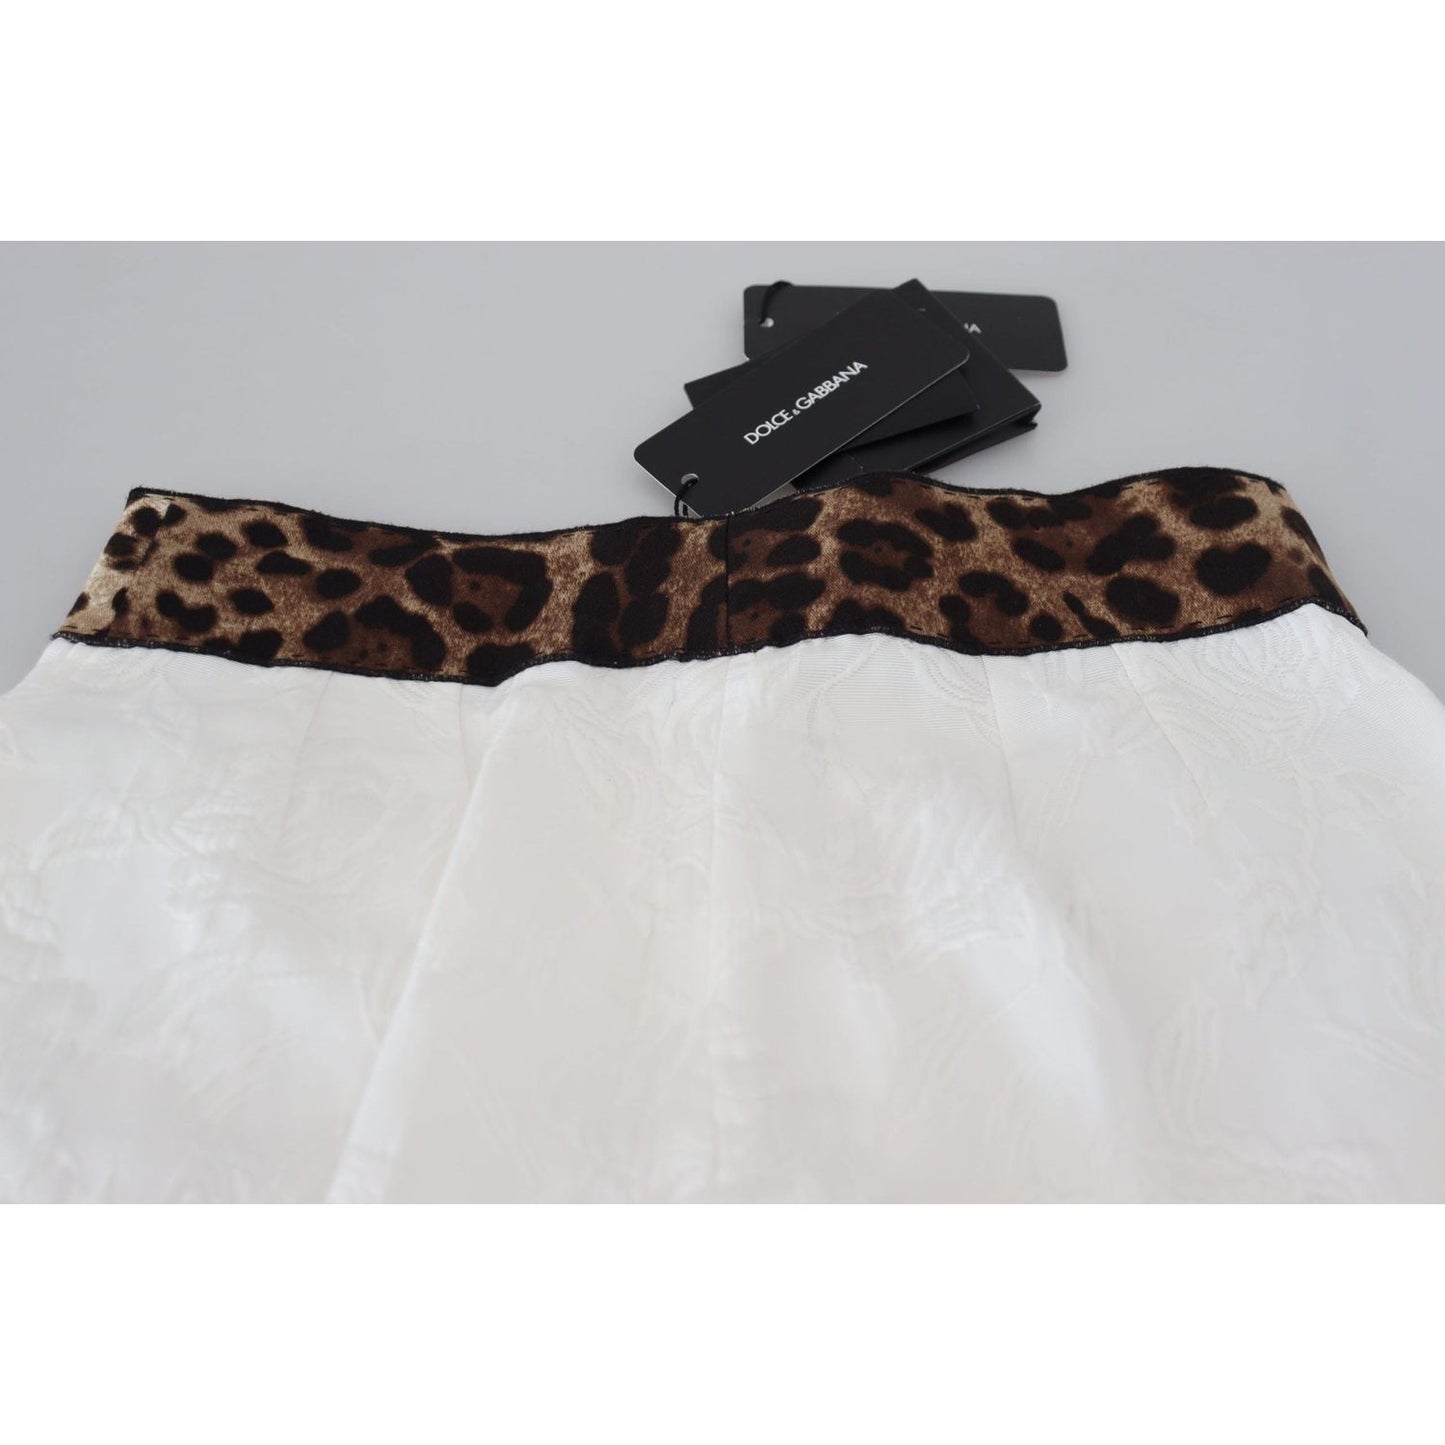 Dolce & GabbanaElegant Leopard Print Pants for Sophisticated StyleMcRichard Designer Brands£549.00